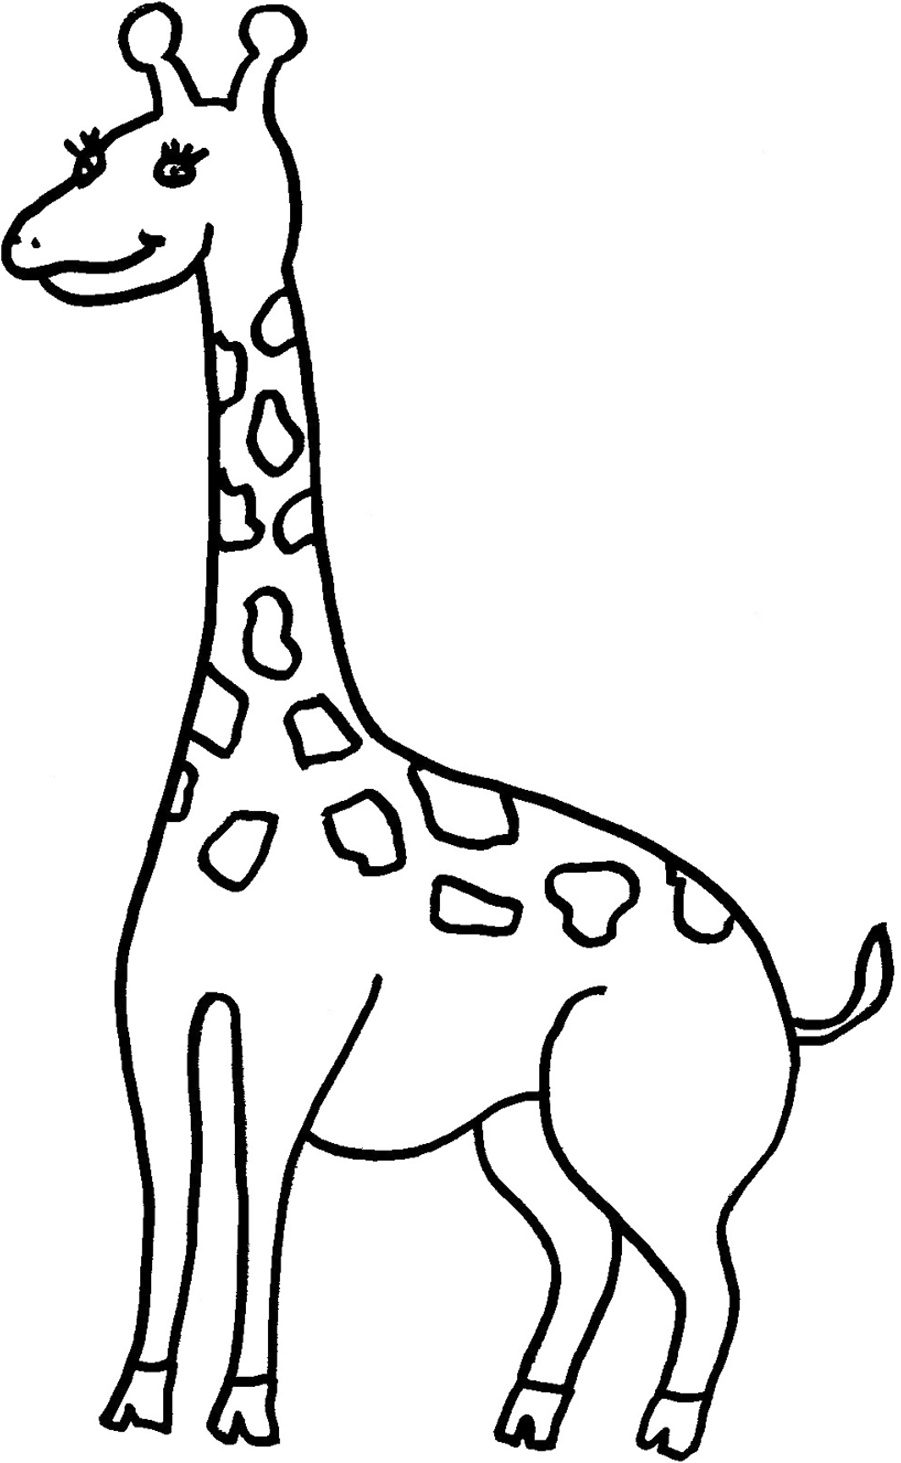 template-of-a-giraffe-giraffe-template-clipart-best-after-the